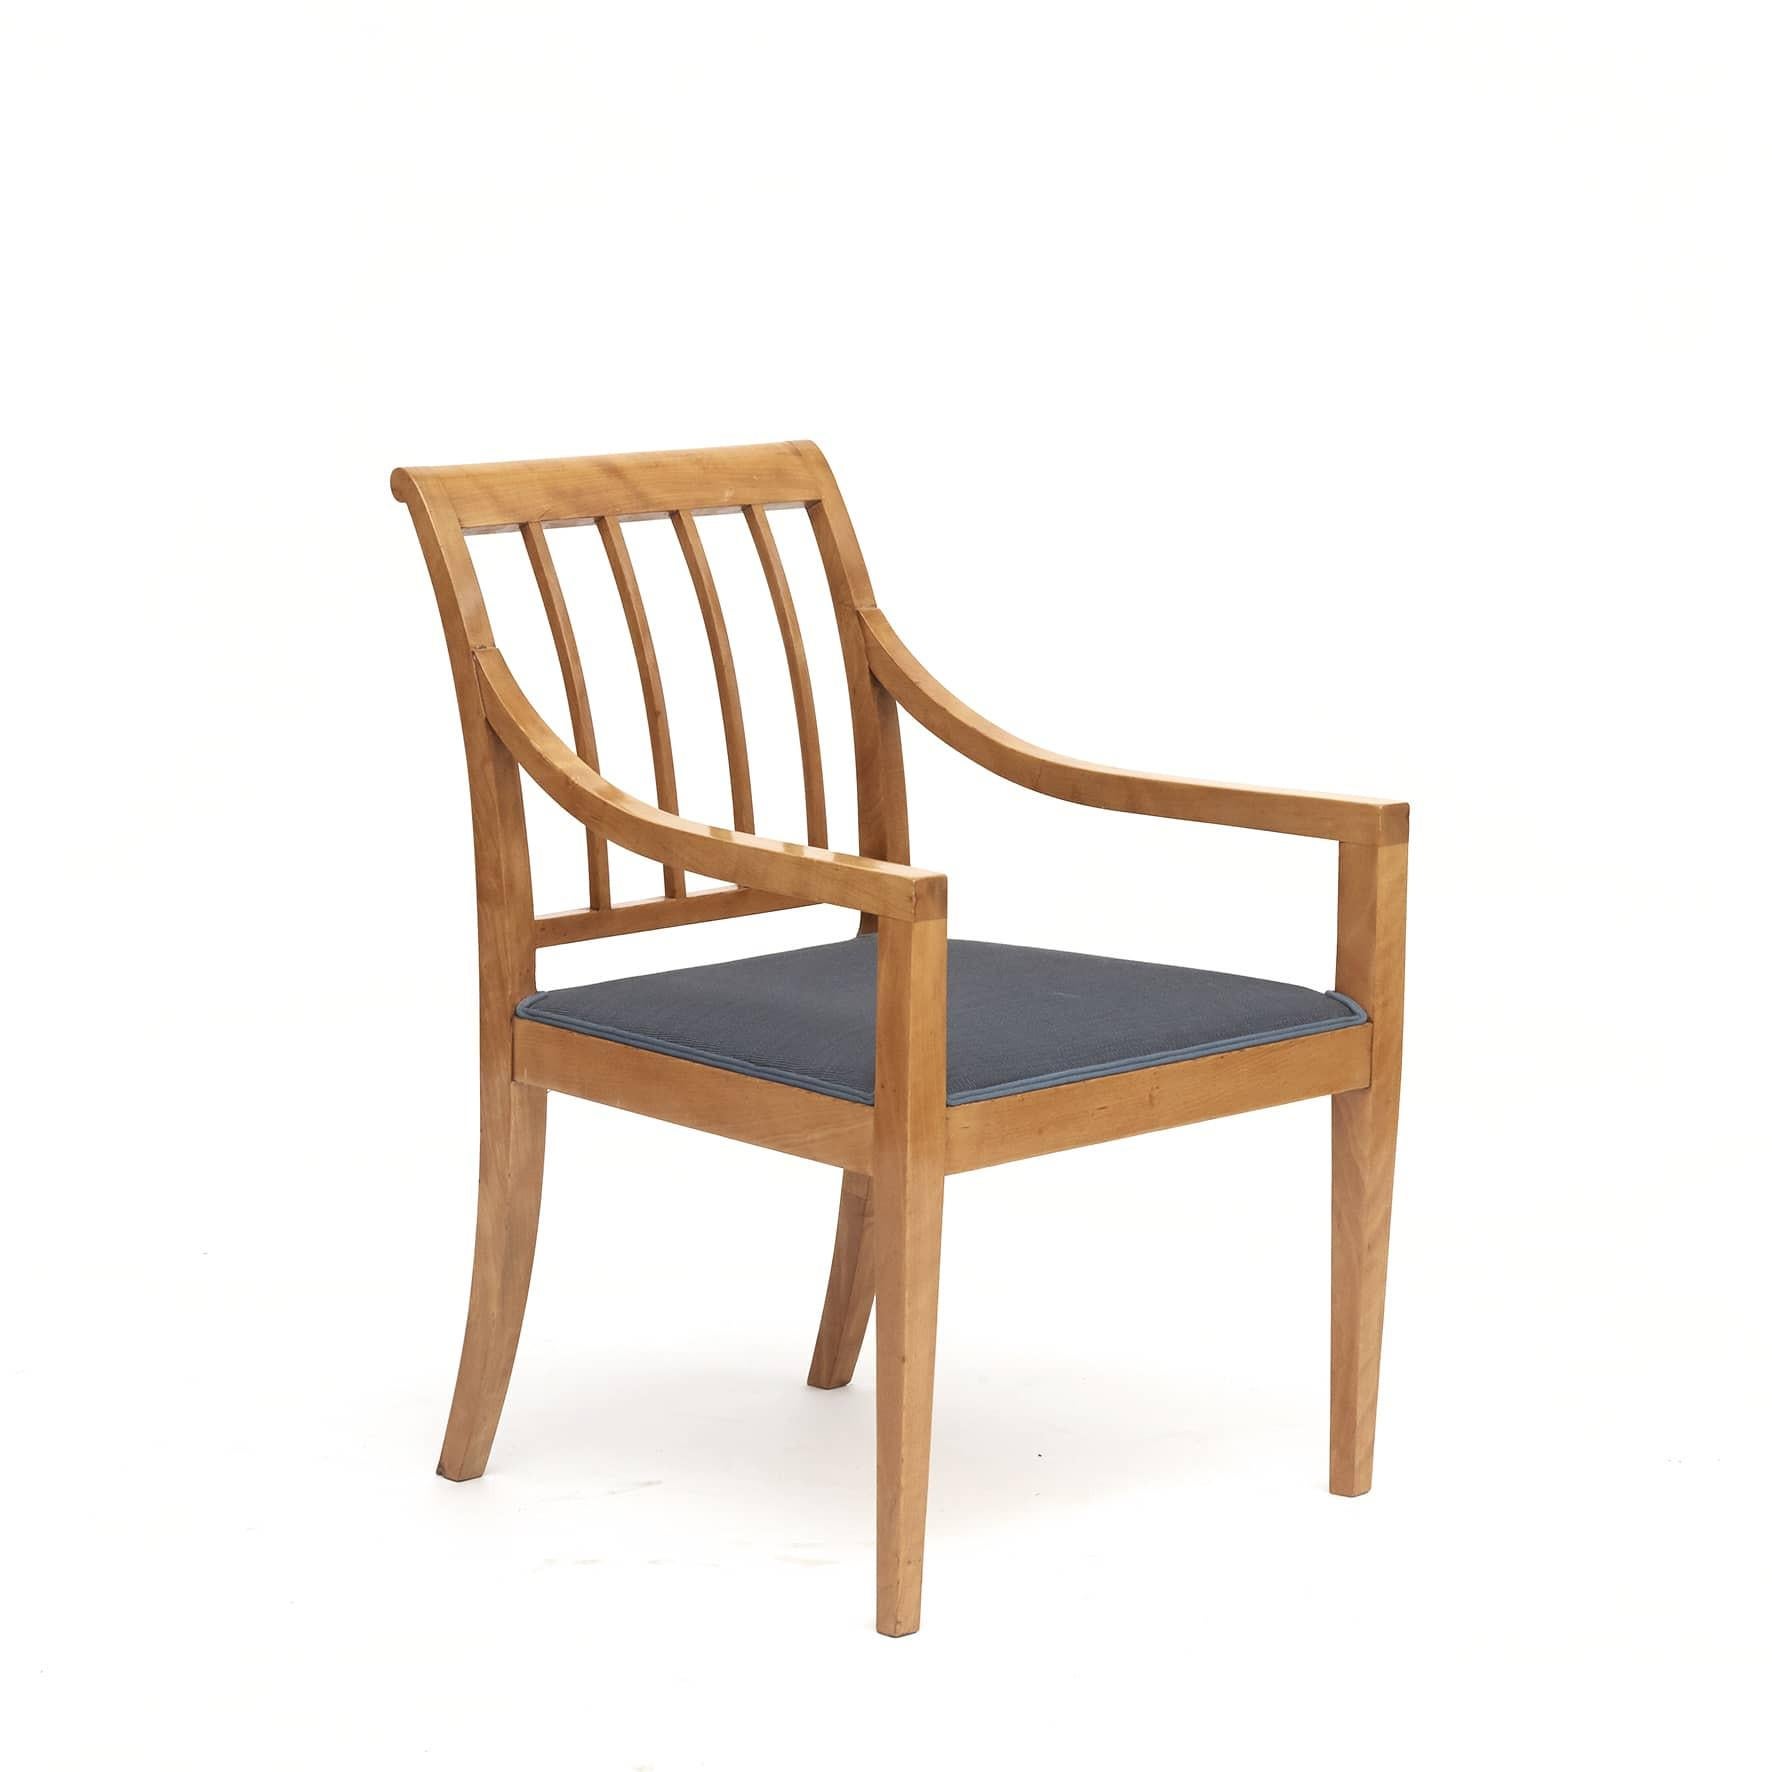 Ein Paar schwedische Grace-Sessel.
Aus Birkenholz gefertigt und mit gewebtem petrolblauem Stoff überzogen.
Verkauft als ein Paar (Preis ist für das Paar) 